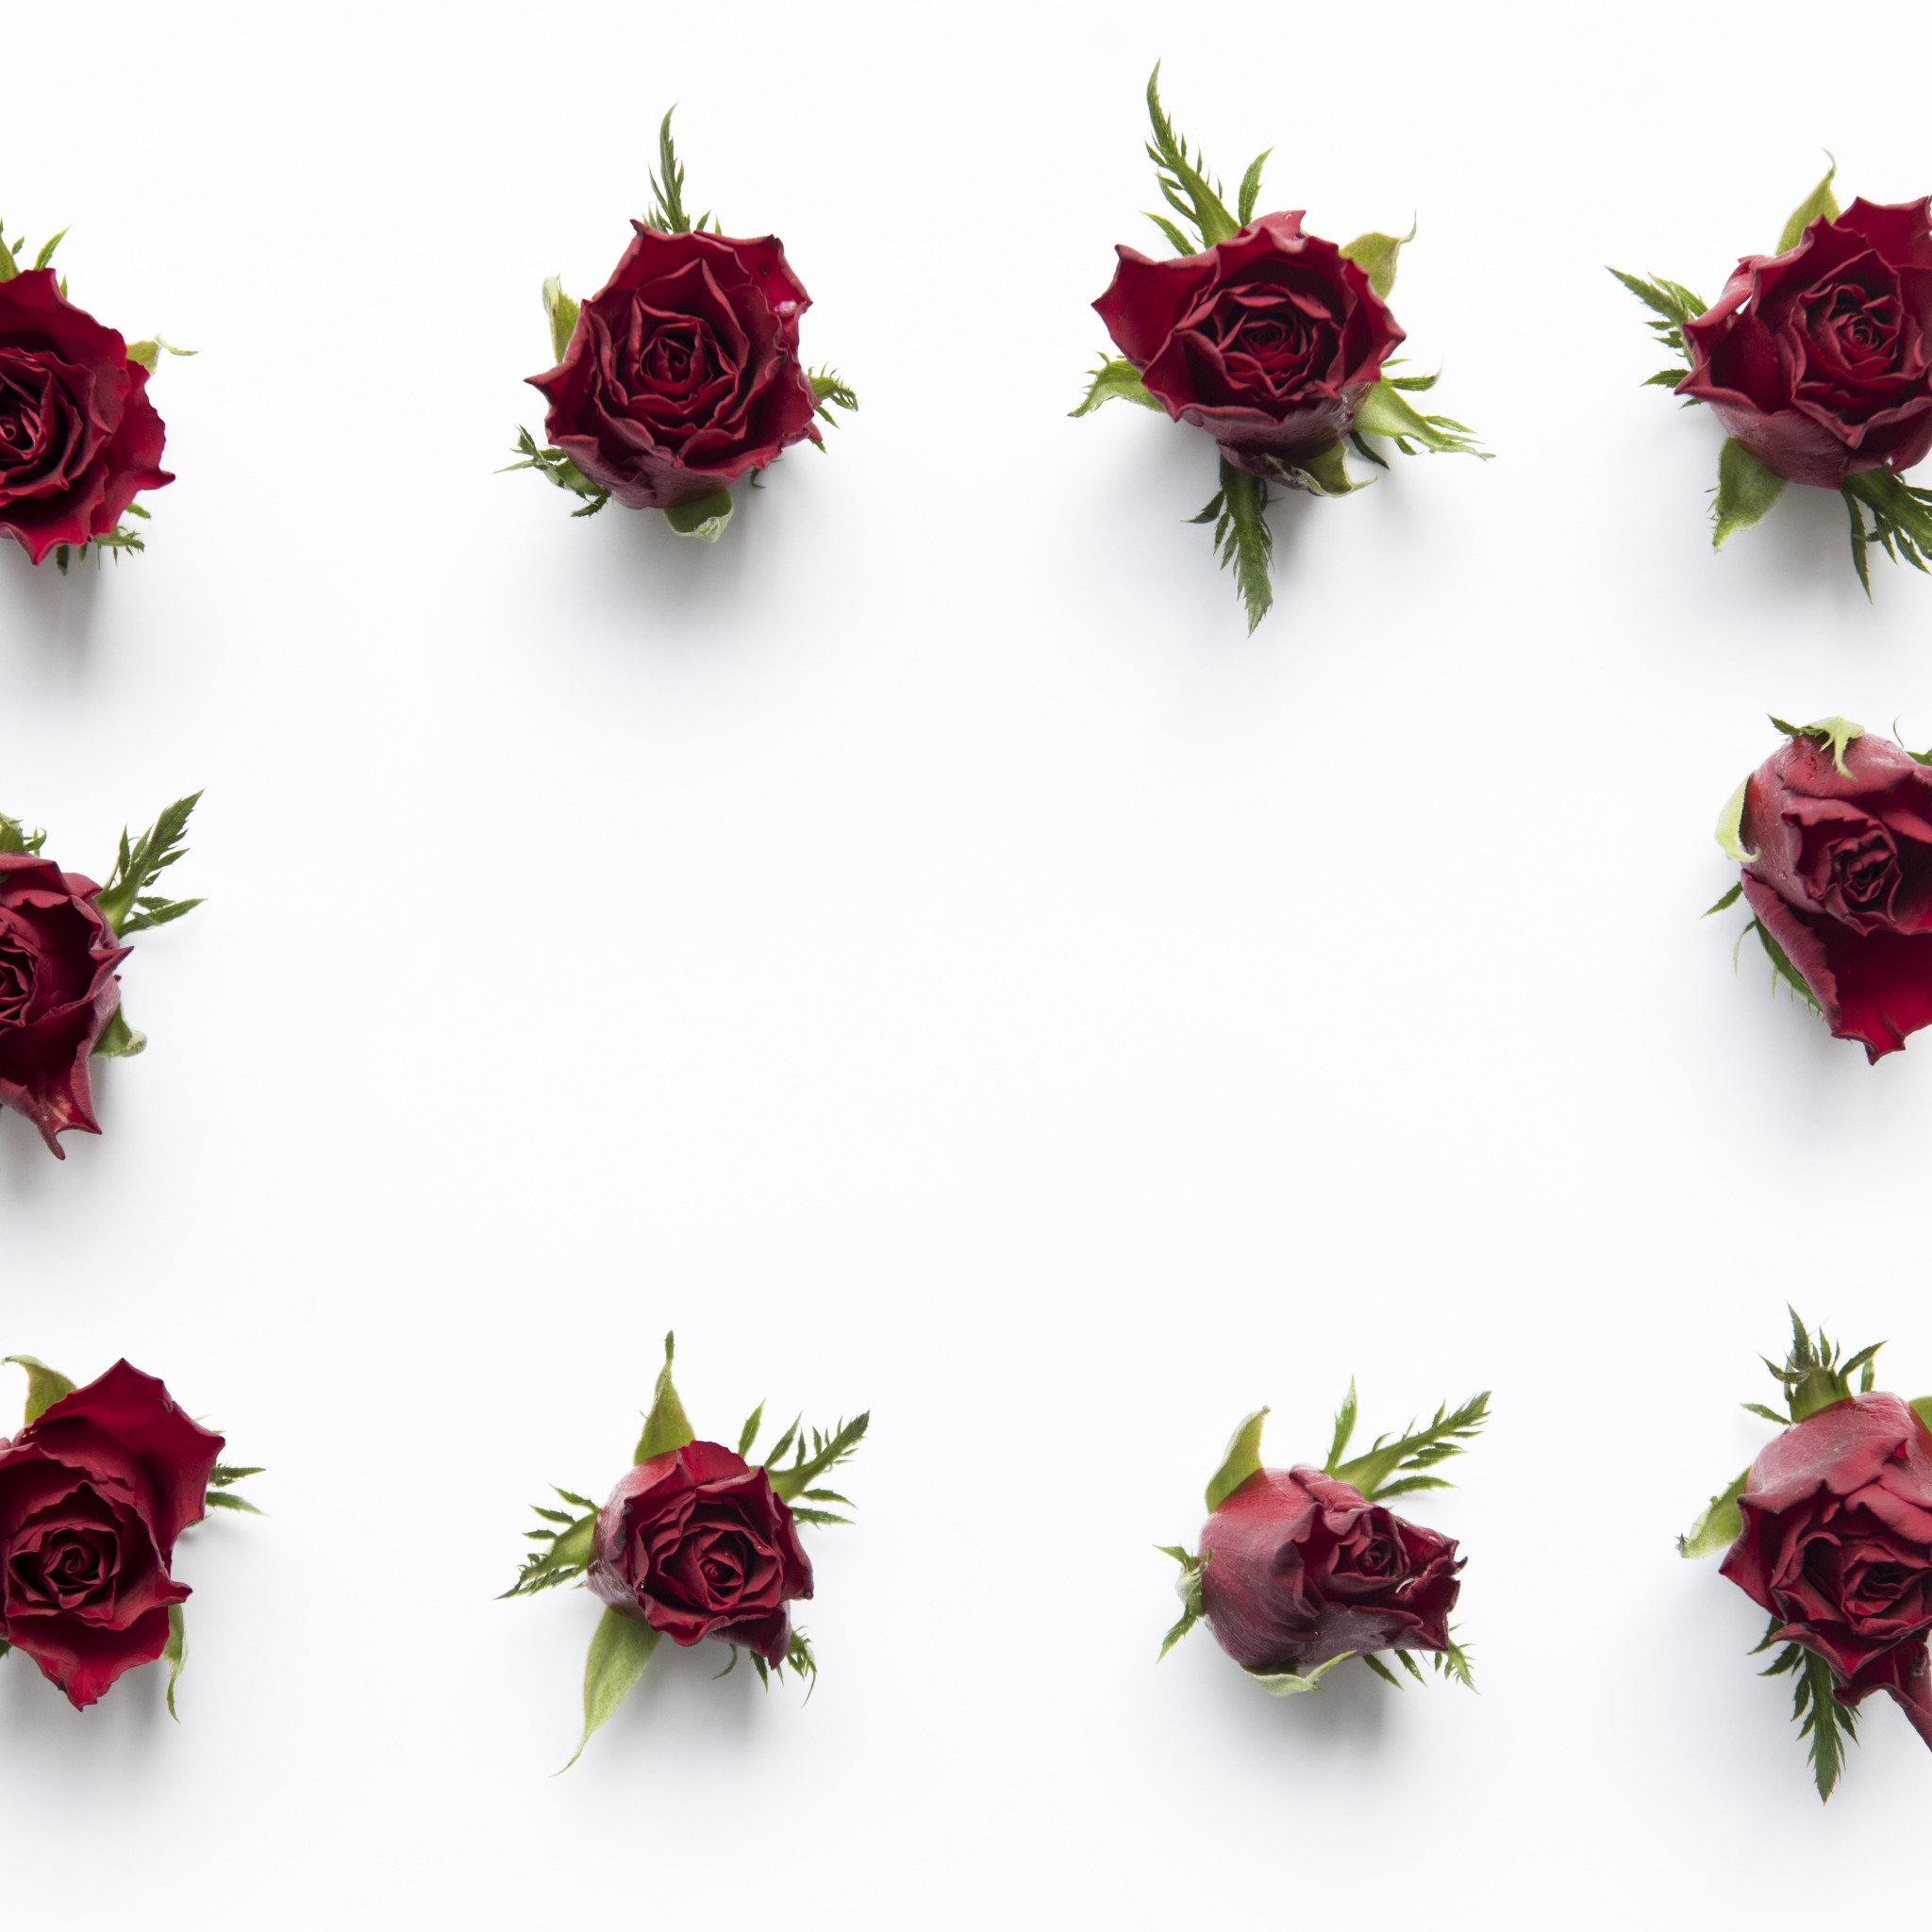 Цветы сверху. Бутон розы для фотошопа. Розы фотошоп коричневые бутоны. Красный бутон цветка вид сверху 3d rendering.